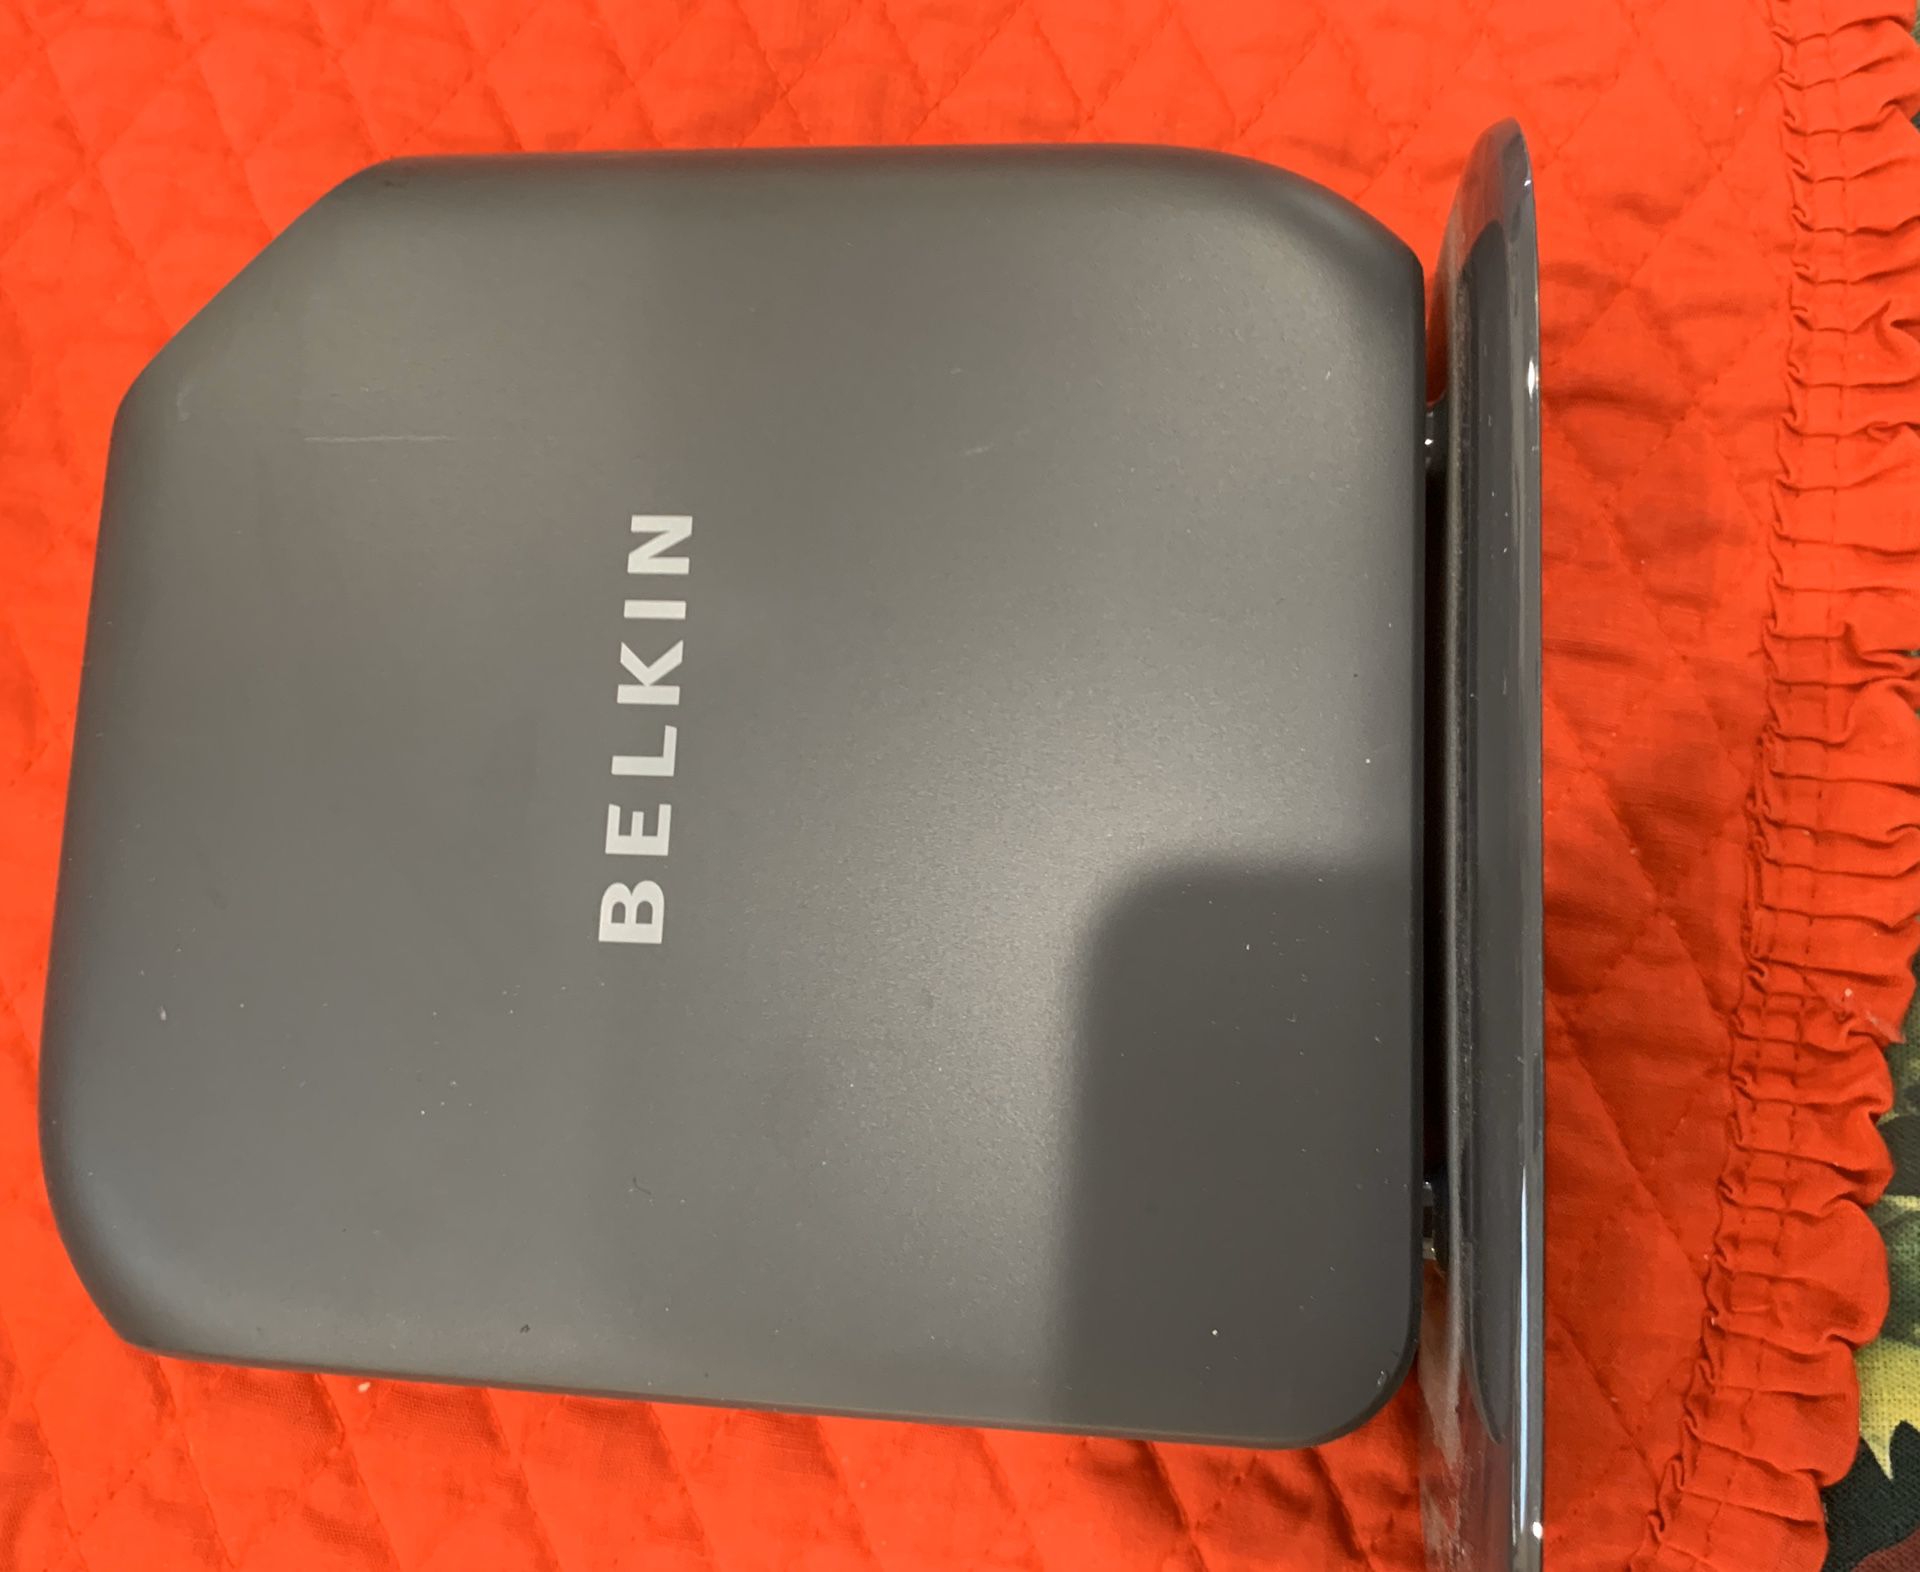 Belkin N300 wireless Router